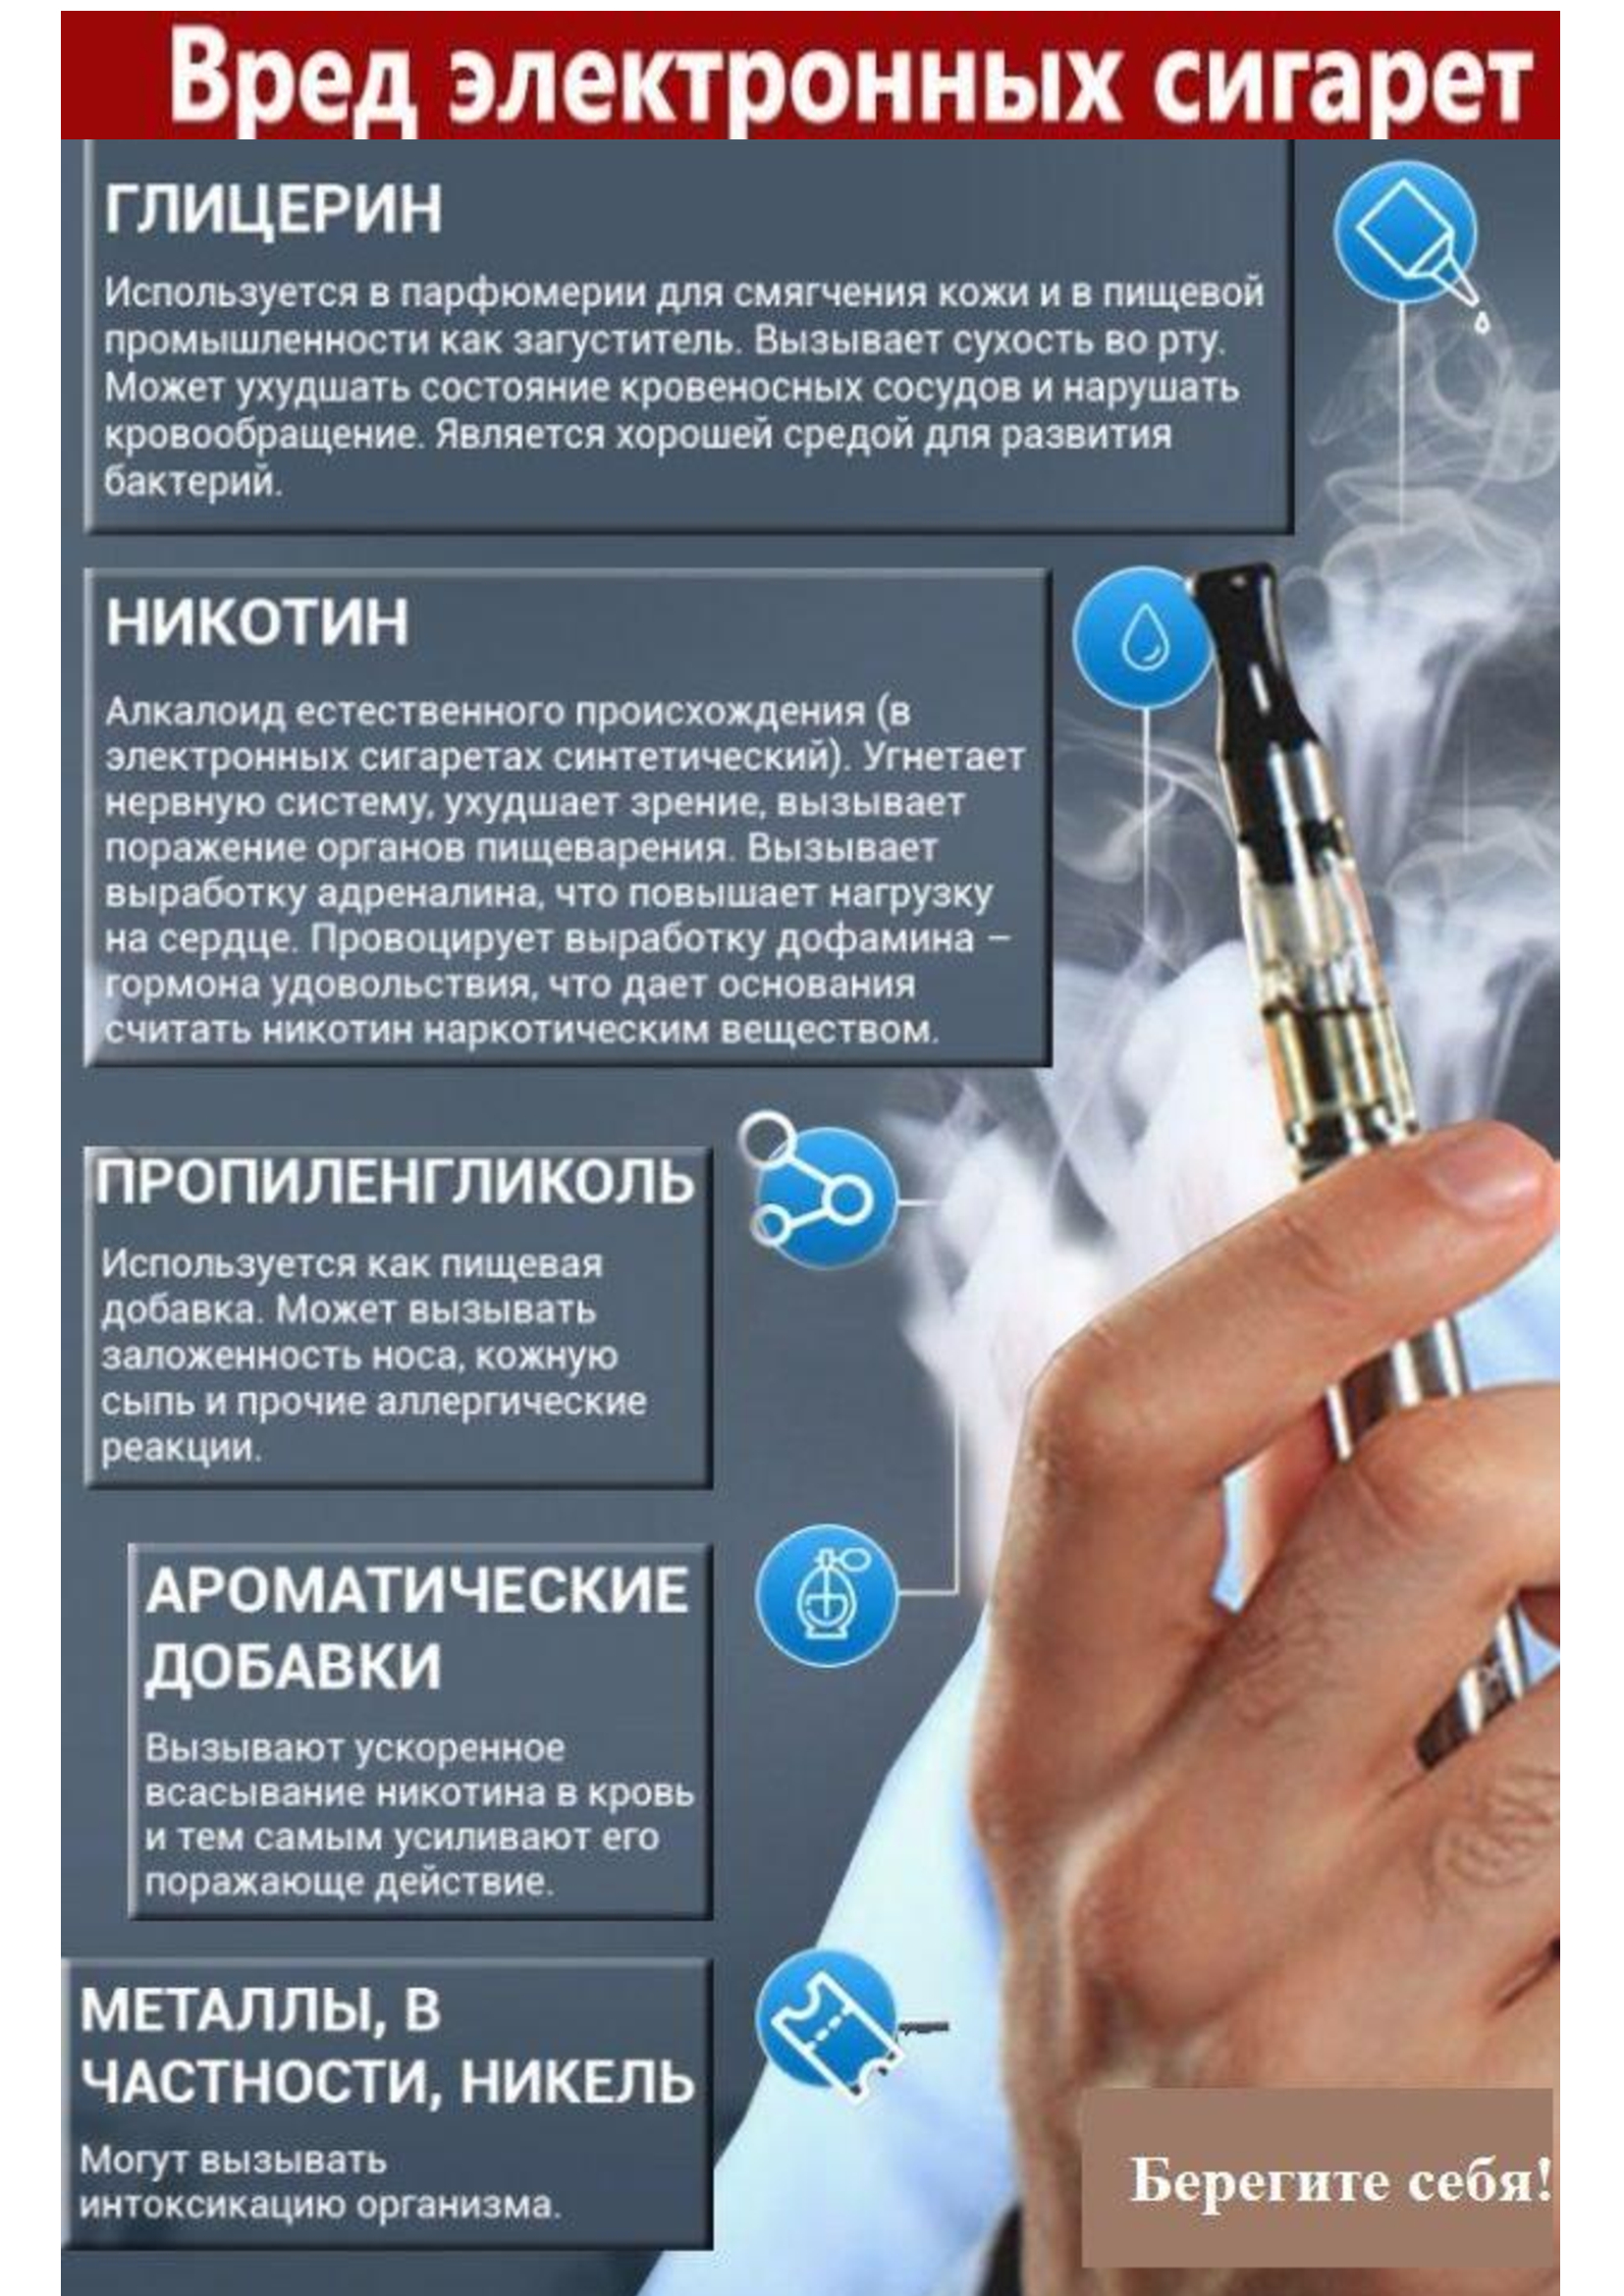 Курить насколько. Вред электронных сигарет. Чем вредны электронные сигареты. Электронки сигареты. Электронные сигареты вред для здоровья.